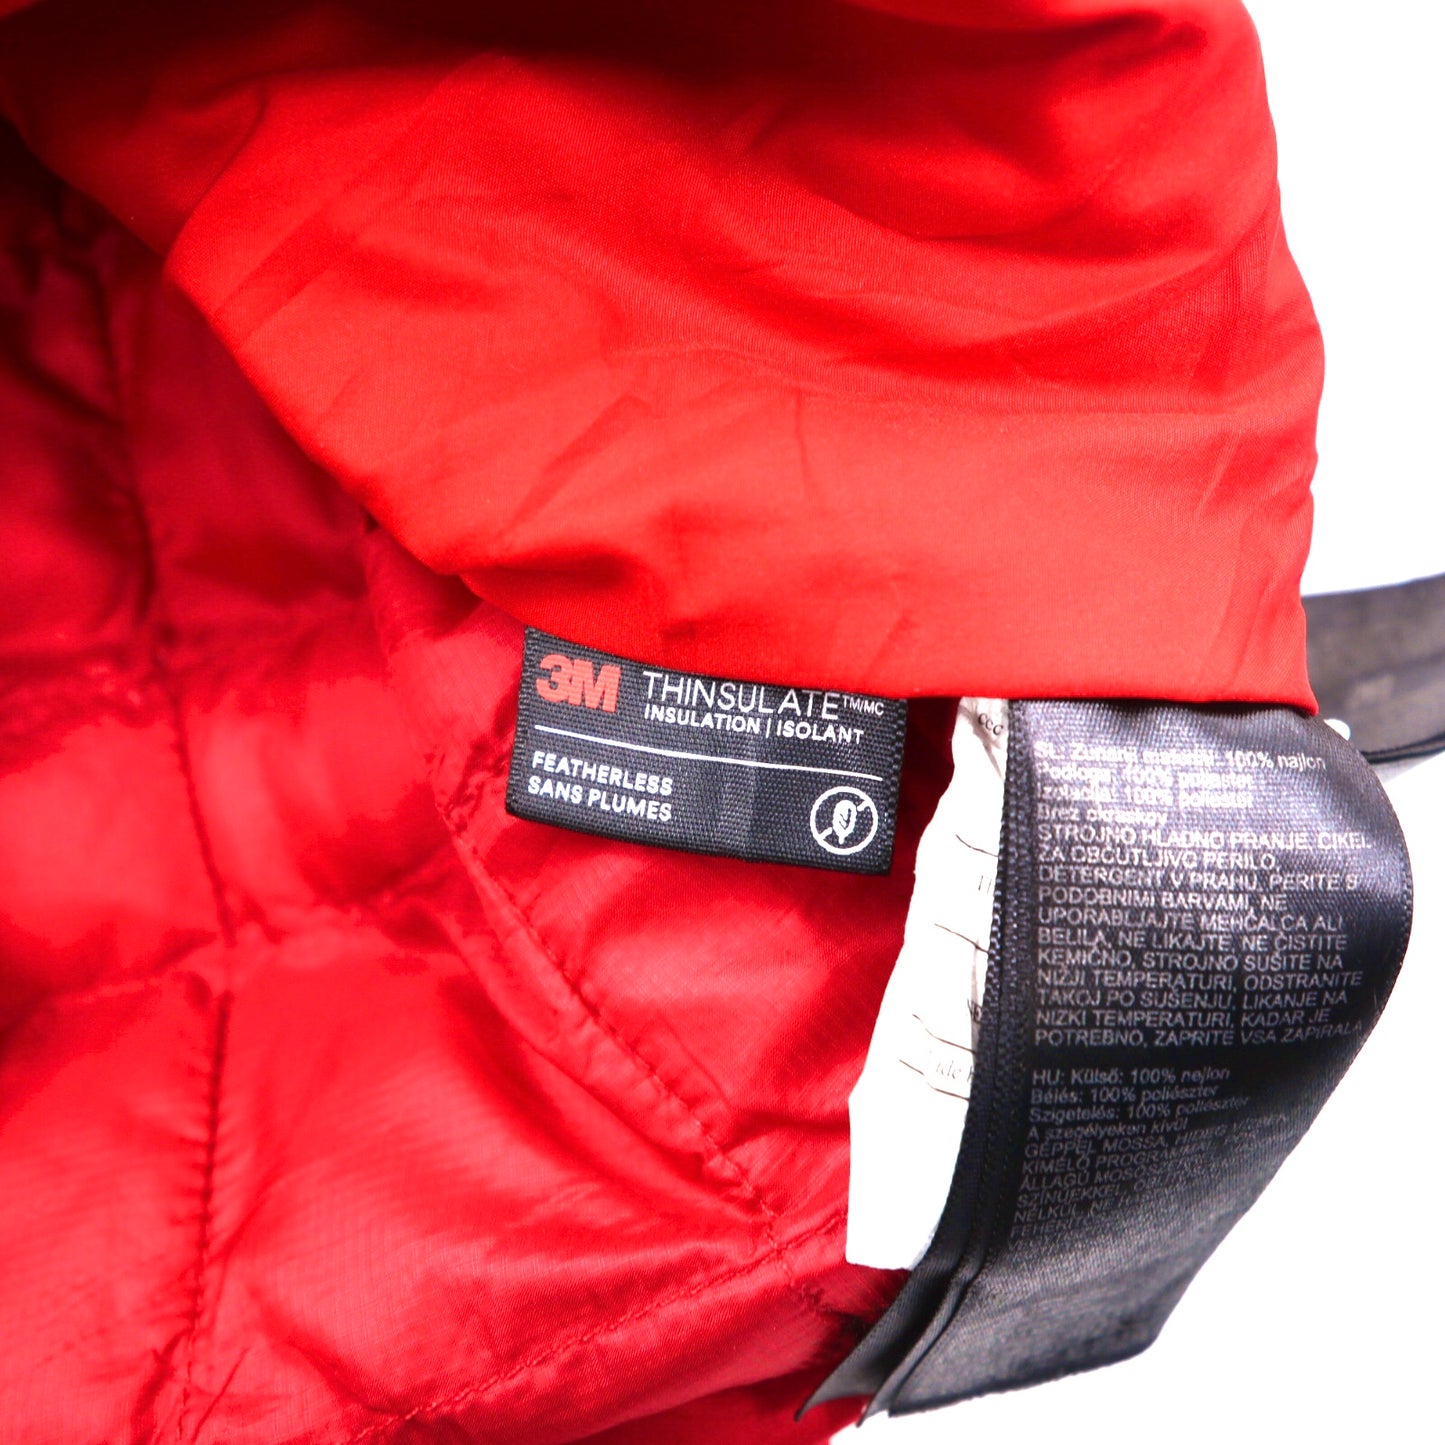 Marmot インサレーションジャケット S レッド ナイロン